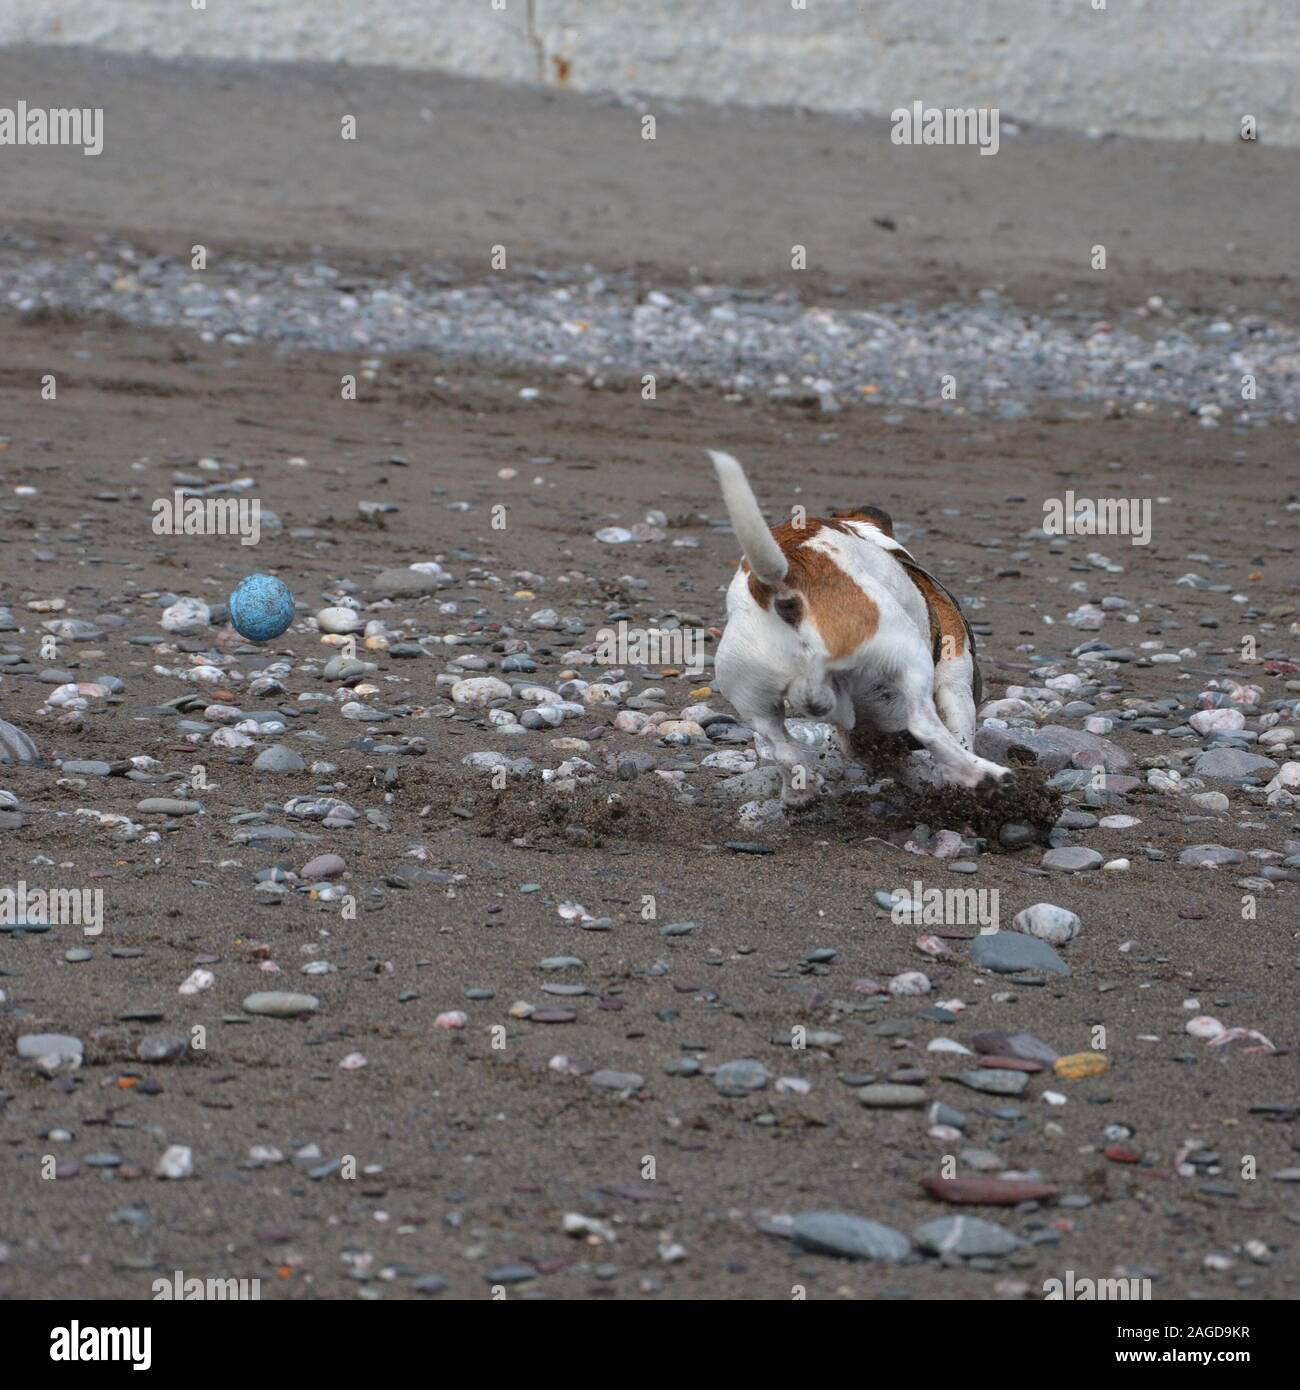 Un livre blanc et tan Jack Russell Terrier dog joue sur une plage de galets, et tourne vite, le patinage sur le sable, pour essayer d'attraper une balle bleue qui rebondit Banque D'Images